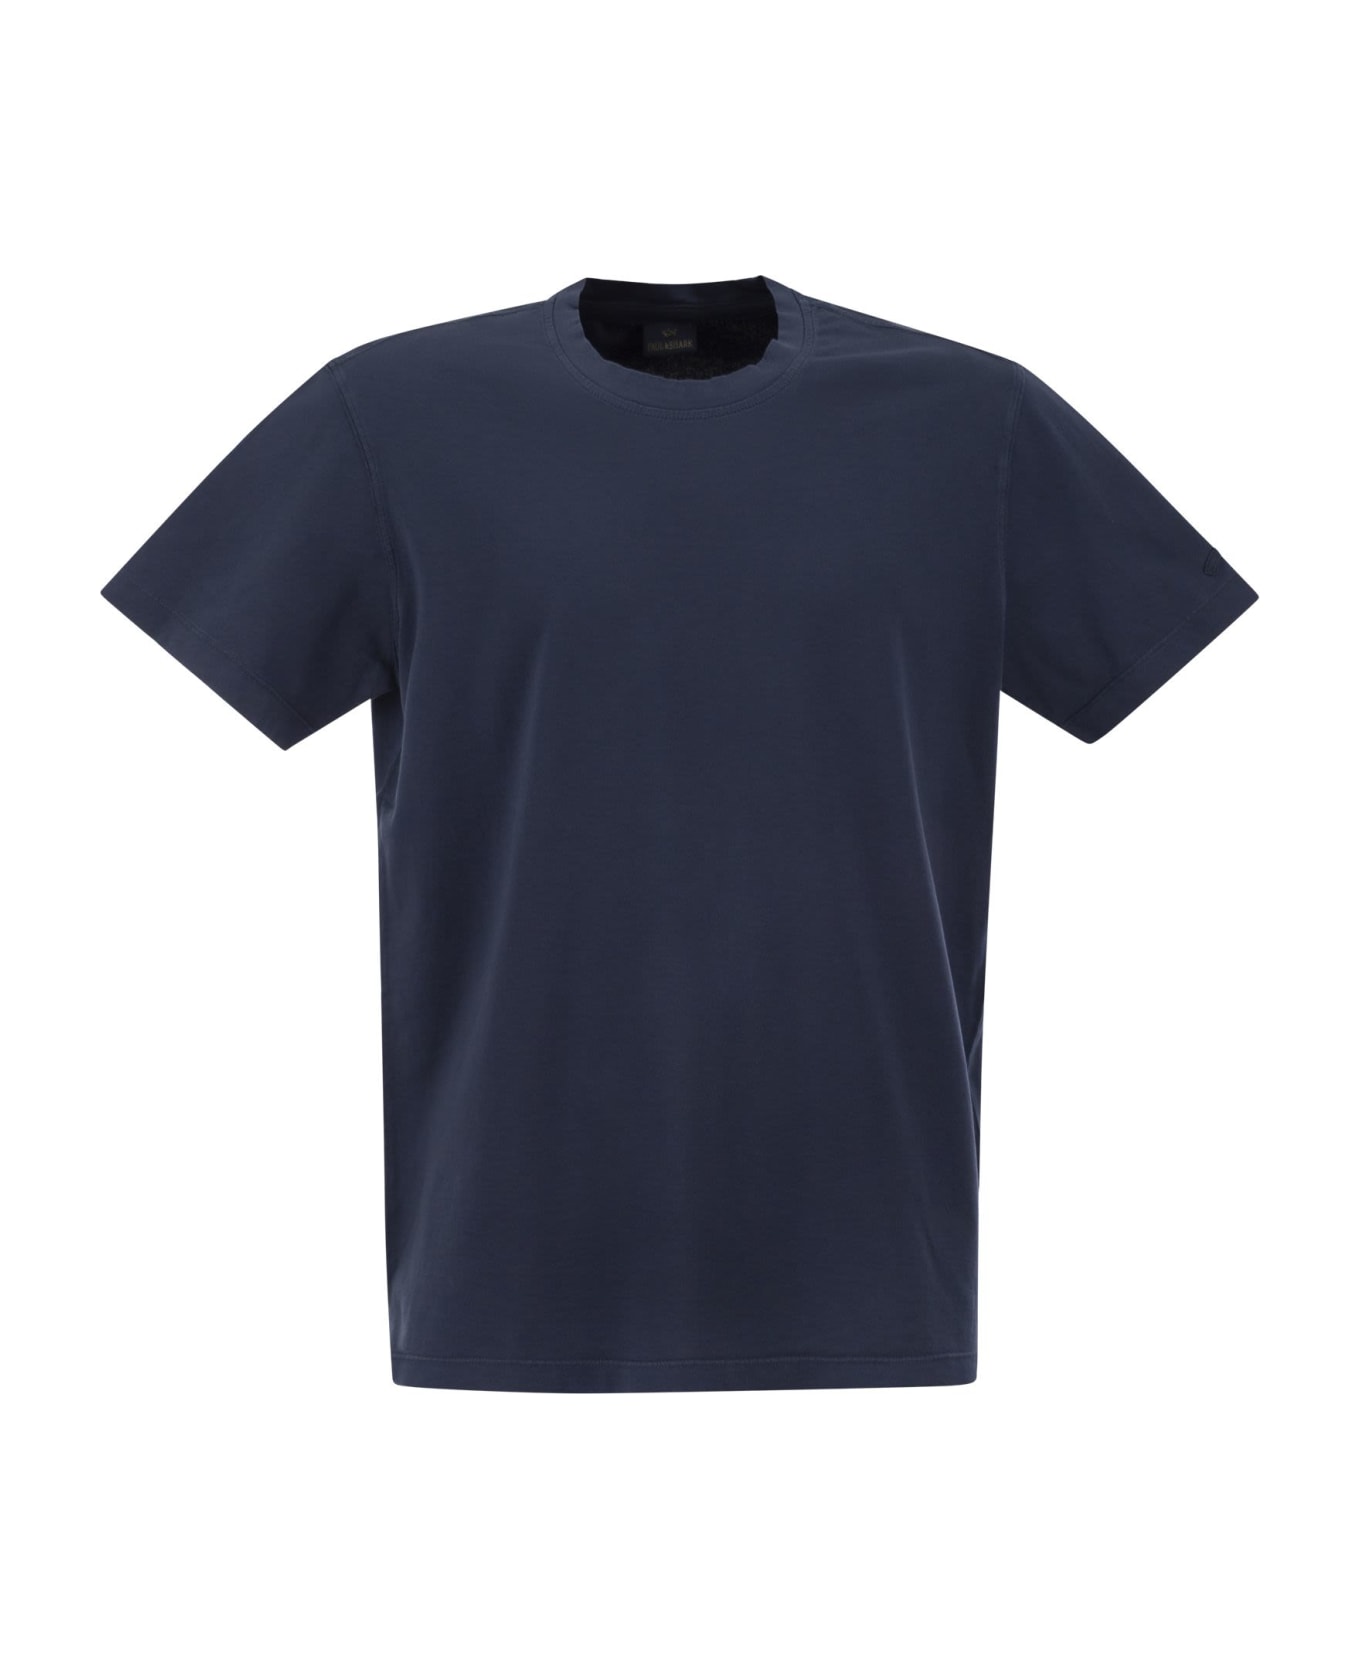 Paul&Shark Garment Dyed Cotton Jersey T-shirt